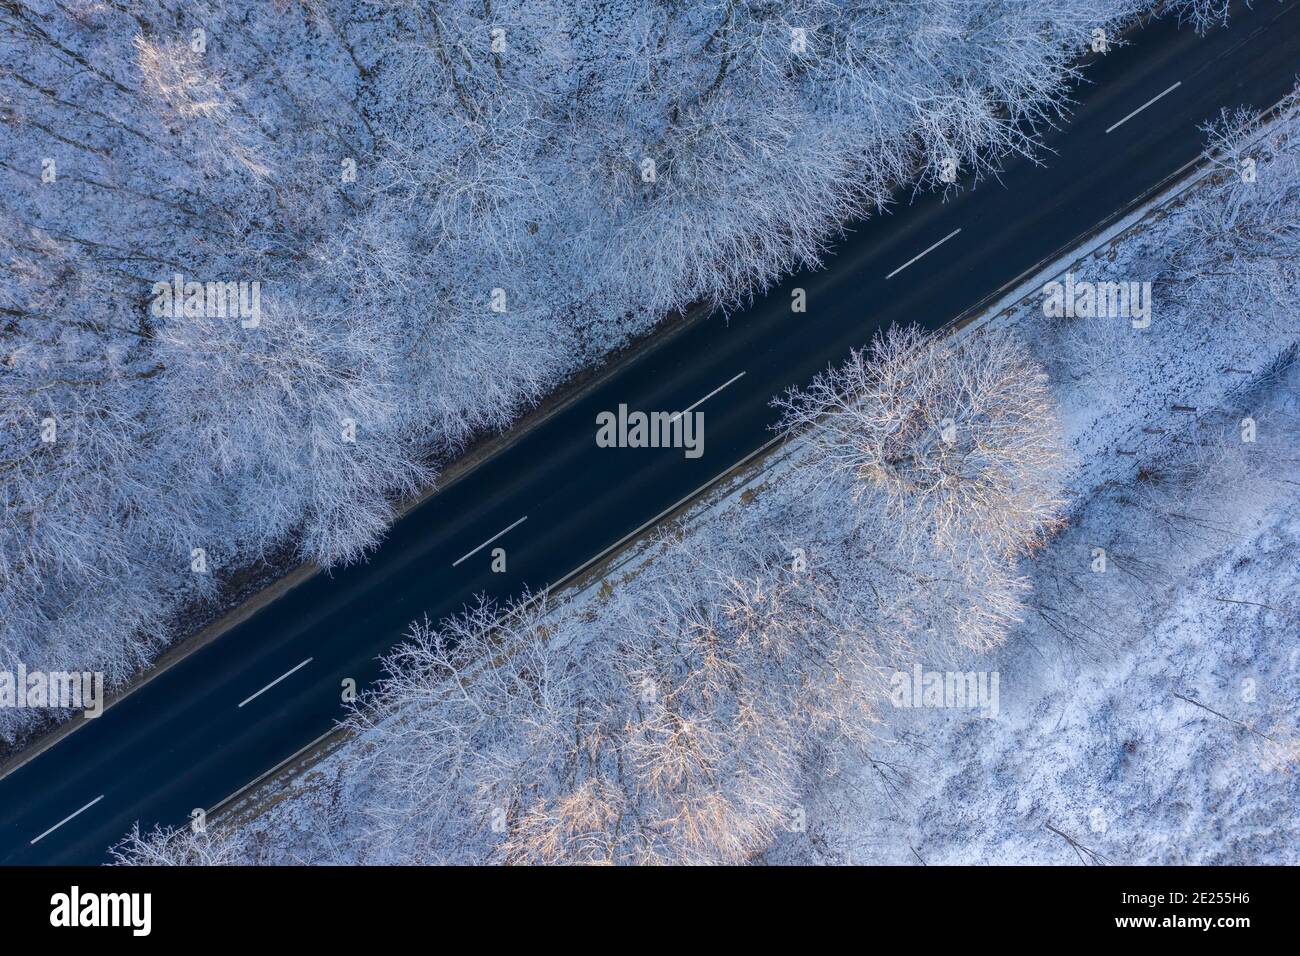 Csesznek, Ungheria - veduta aerea dall'alto verso il basso della foresta invernale attraversata da una strada asfaltata. Sfondo paesaggio innevato. Foto Stock